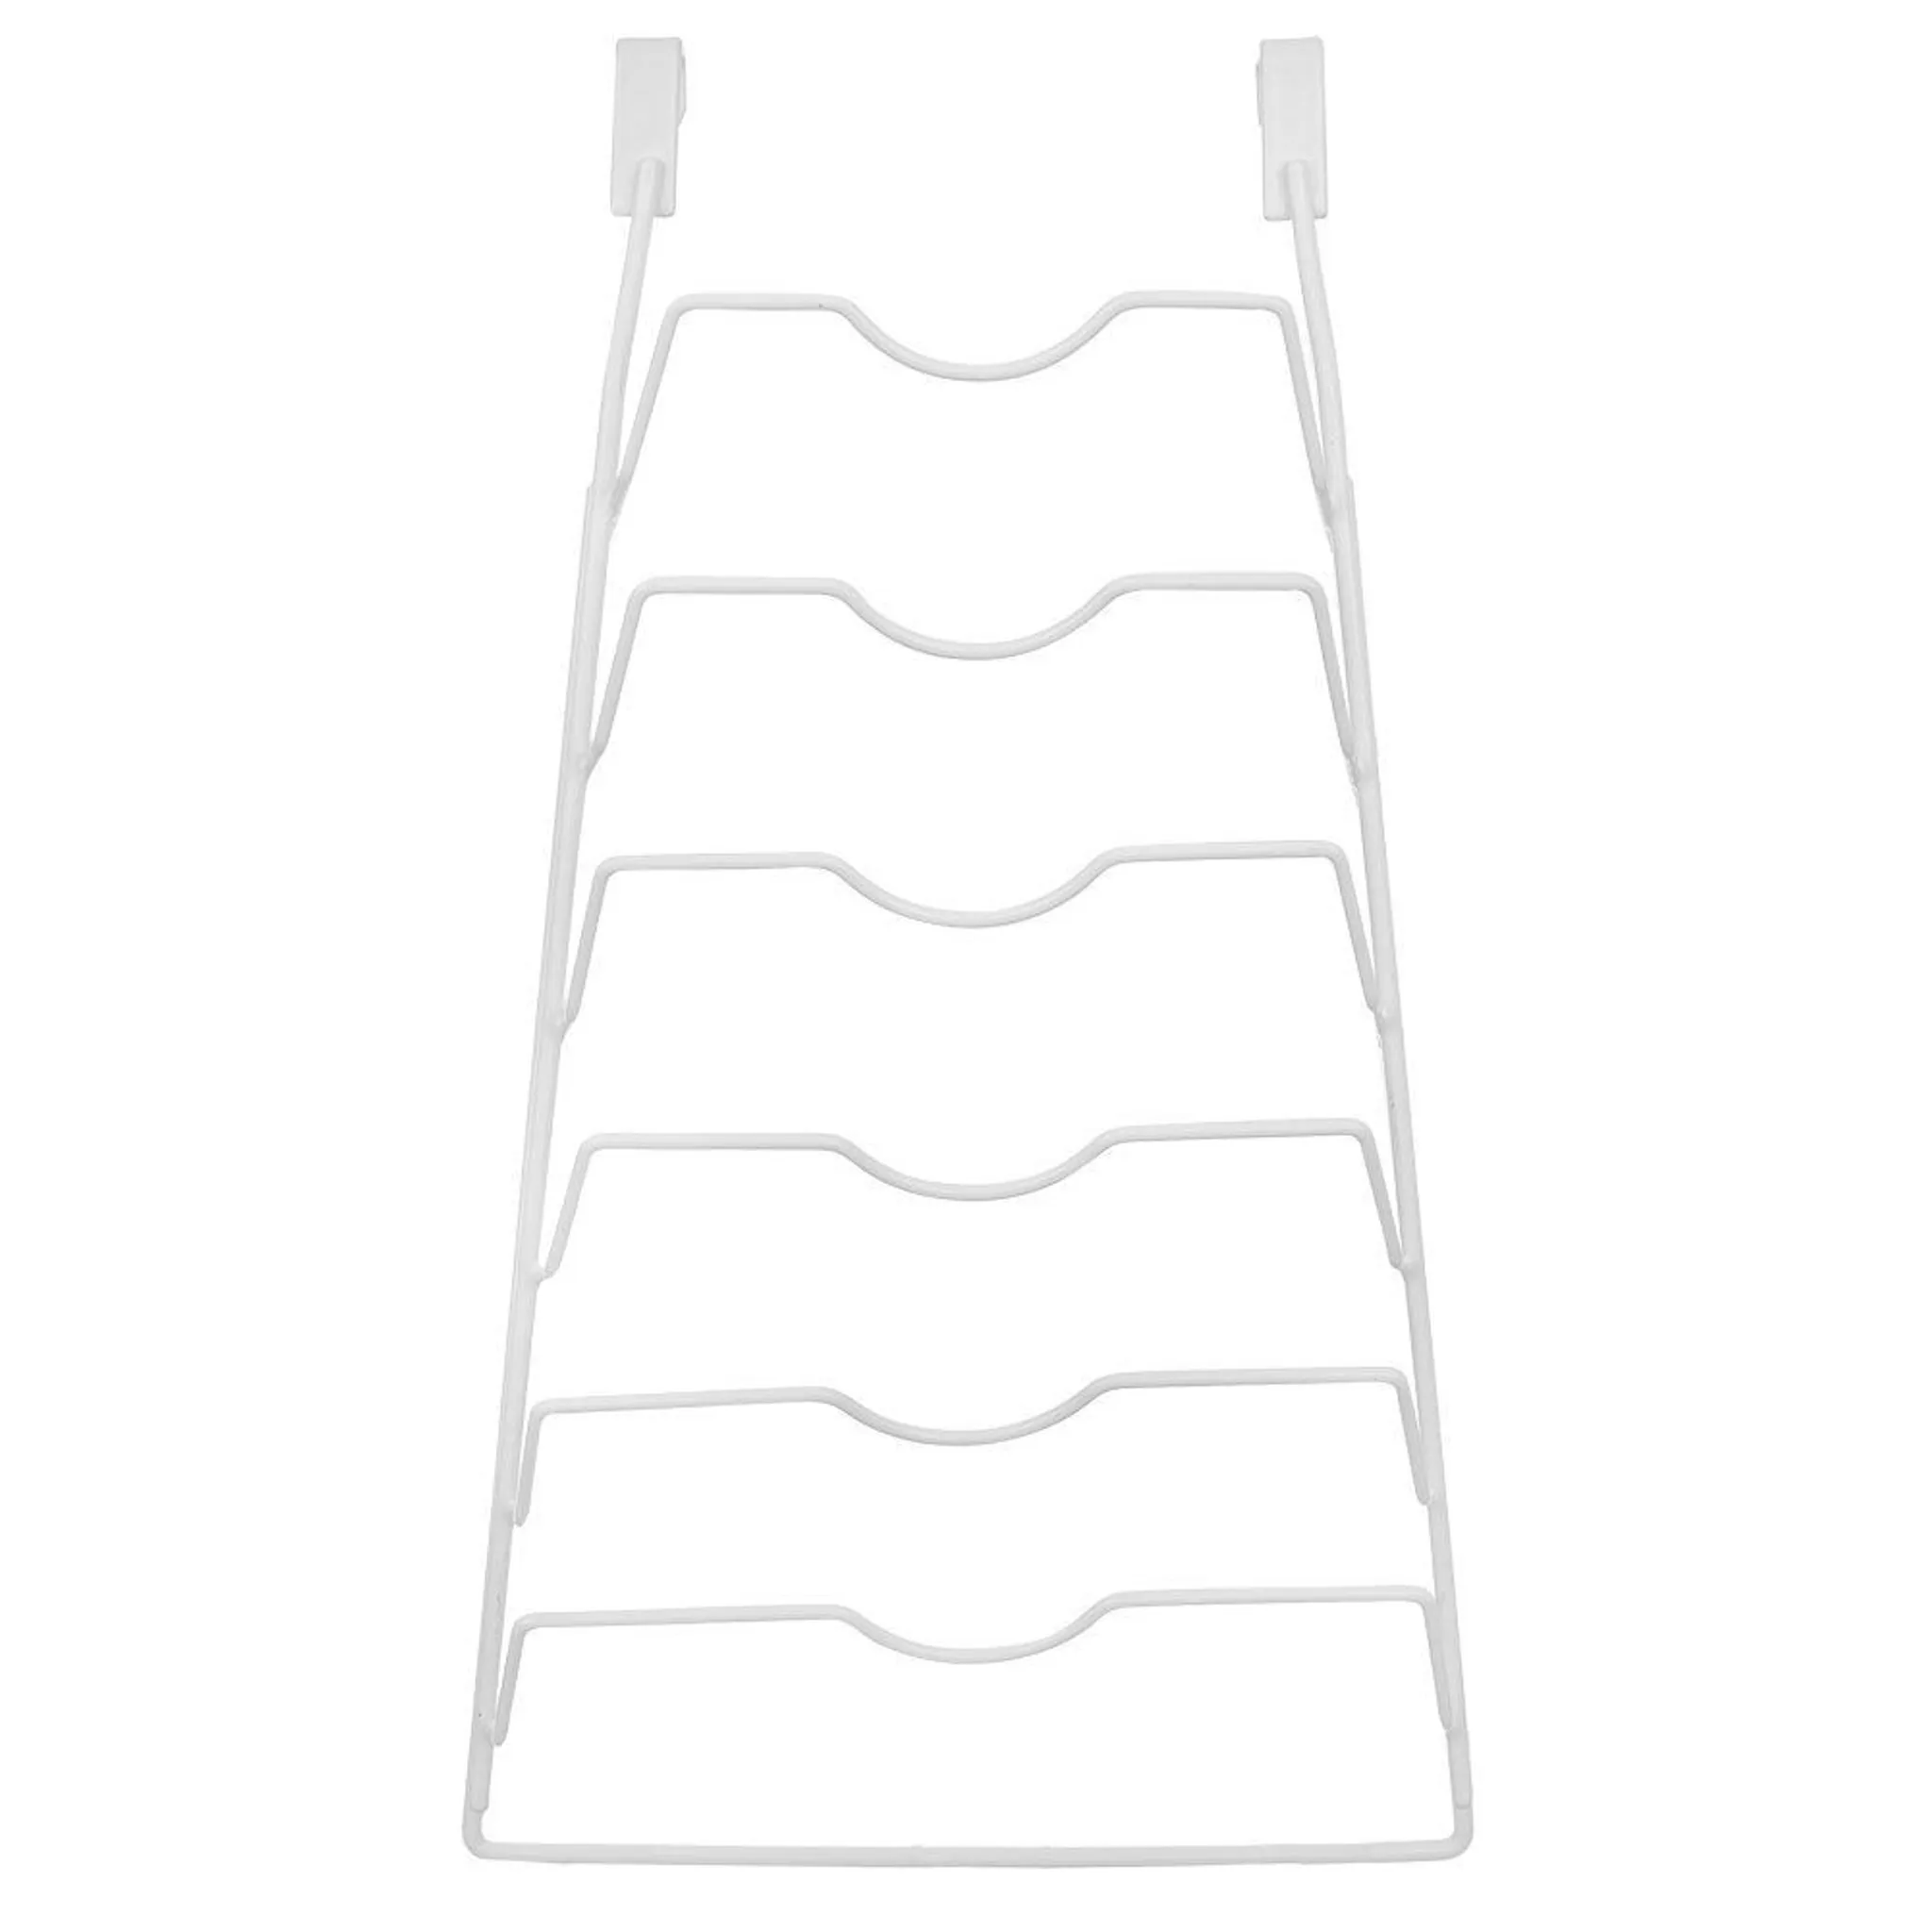 Orion Topfdeckelhalter Wanddeckelhalter Organizer zum Aufhängen an der  Küchenschranktür aus Metall weiß